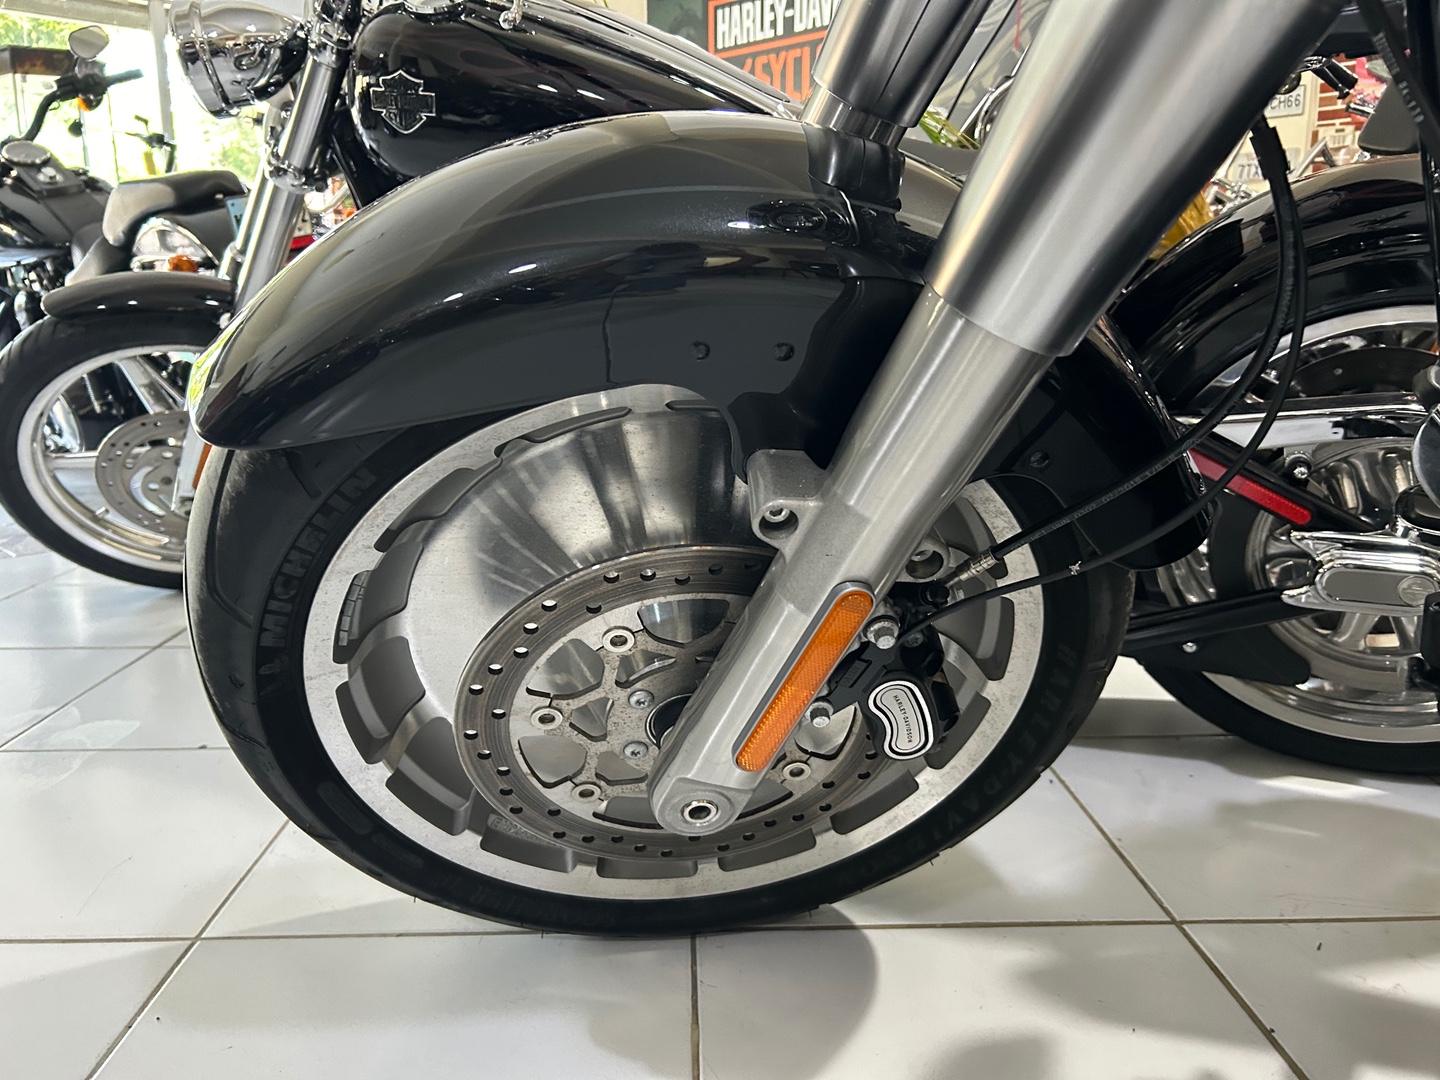 motores y pasolas - Harley Davidson Fat Boy 114 año 2018 3